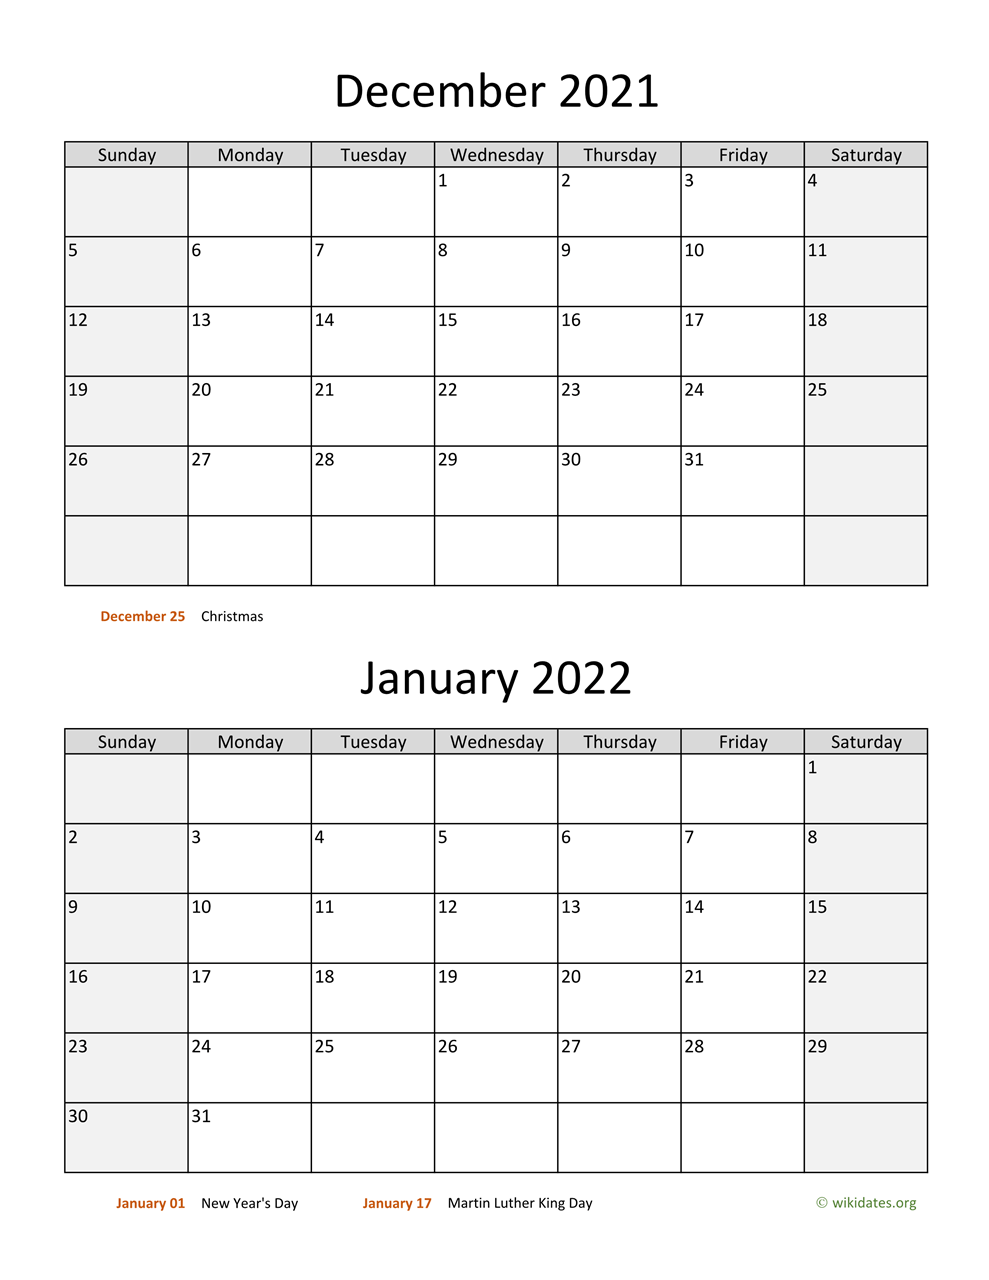 Dec 2021 Jan 2022 Calendar December 2021 And January 2022 Calendar | Wikidates.org